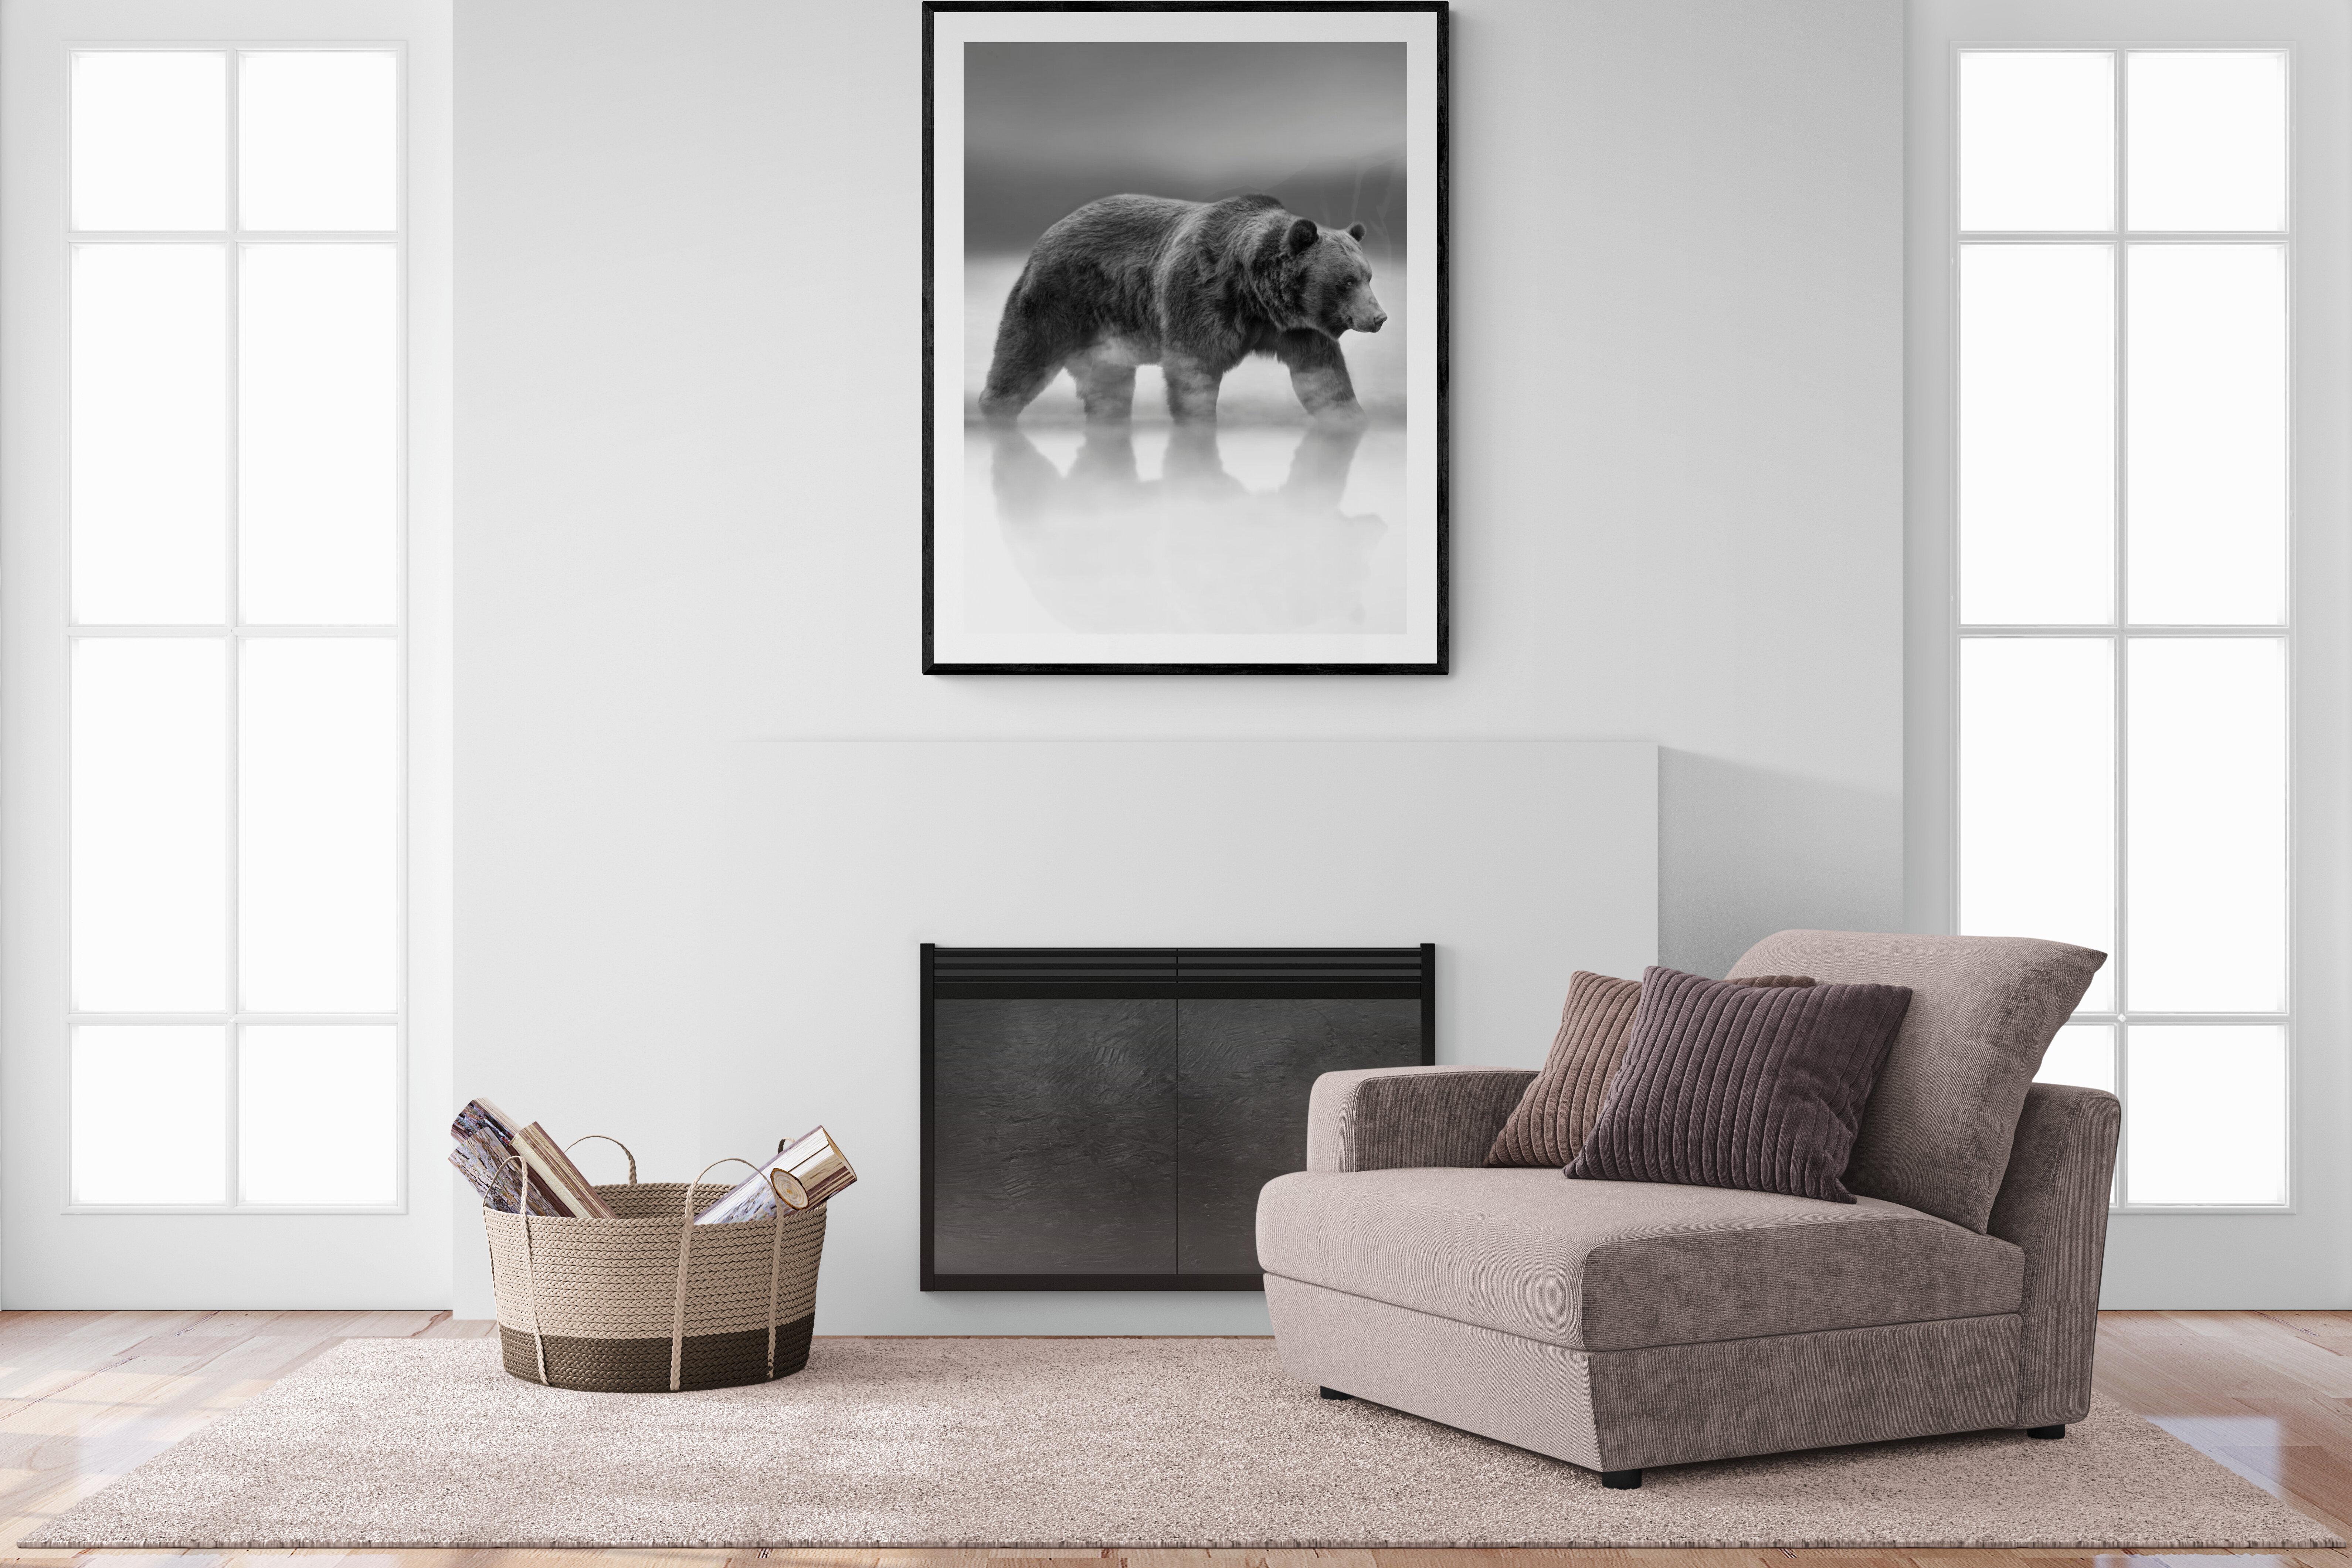 Dies ist eine zeitgenössische Fotografie eines Kodiakbären.  
Dies wurde 2019 auf Kodiak Island gedreht. 
36x48 Auflage von 12
Archivalisches Pigmentpapier 
Archivtinten
Vom Künstler signiert und nummeriert.
Einrahmung verfügbar. Erkundigen Sie sich